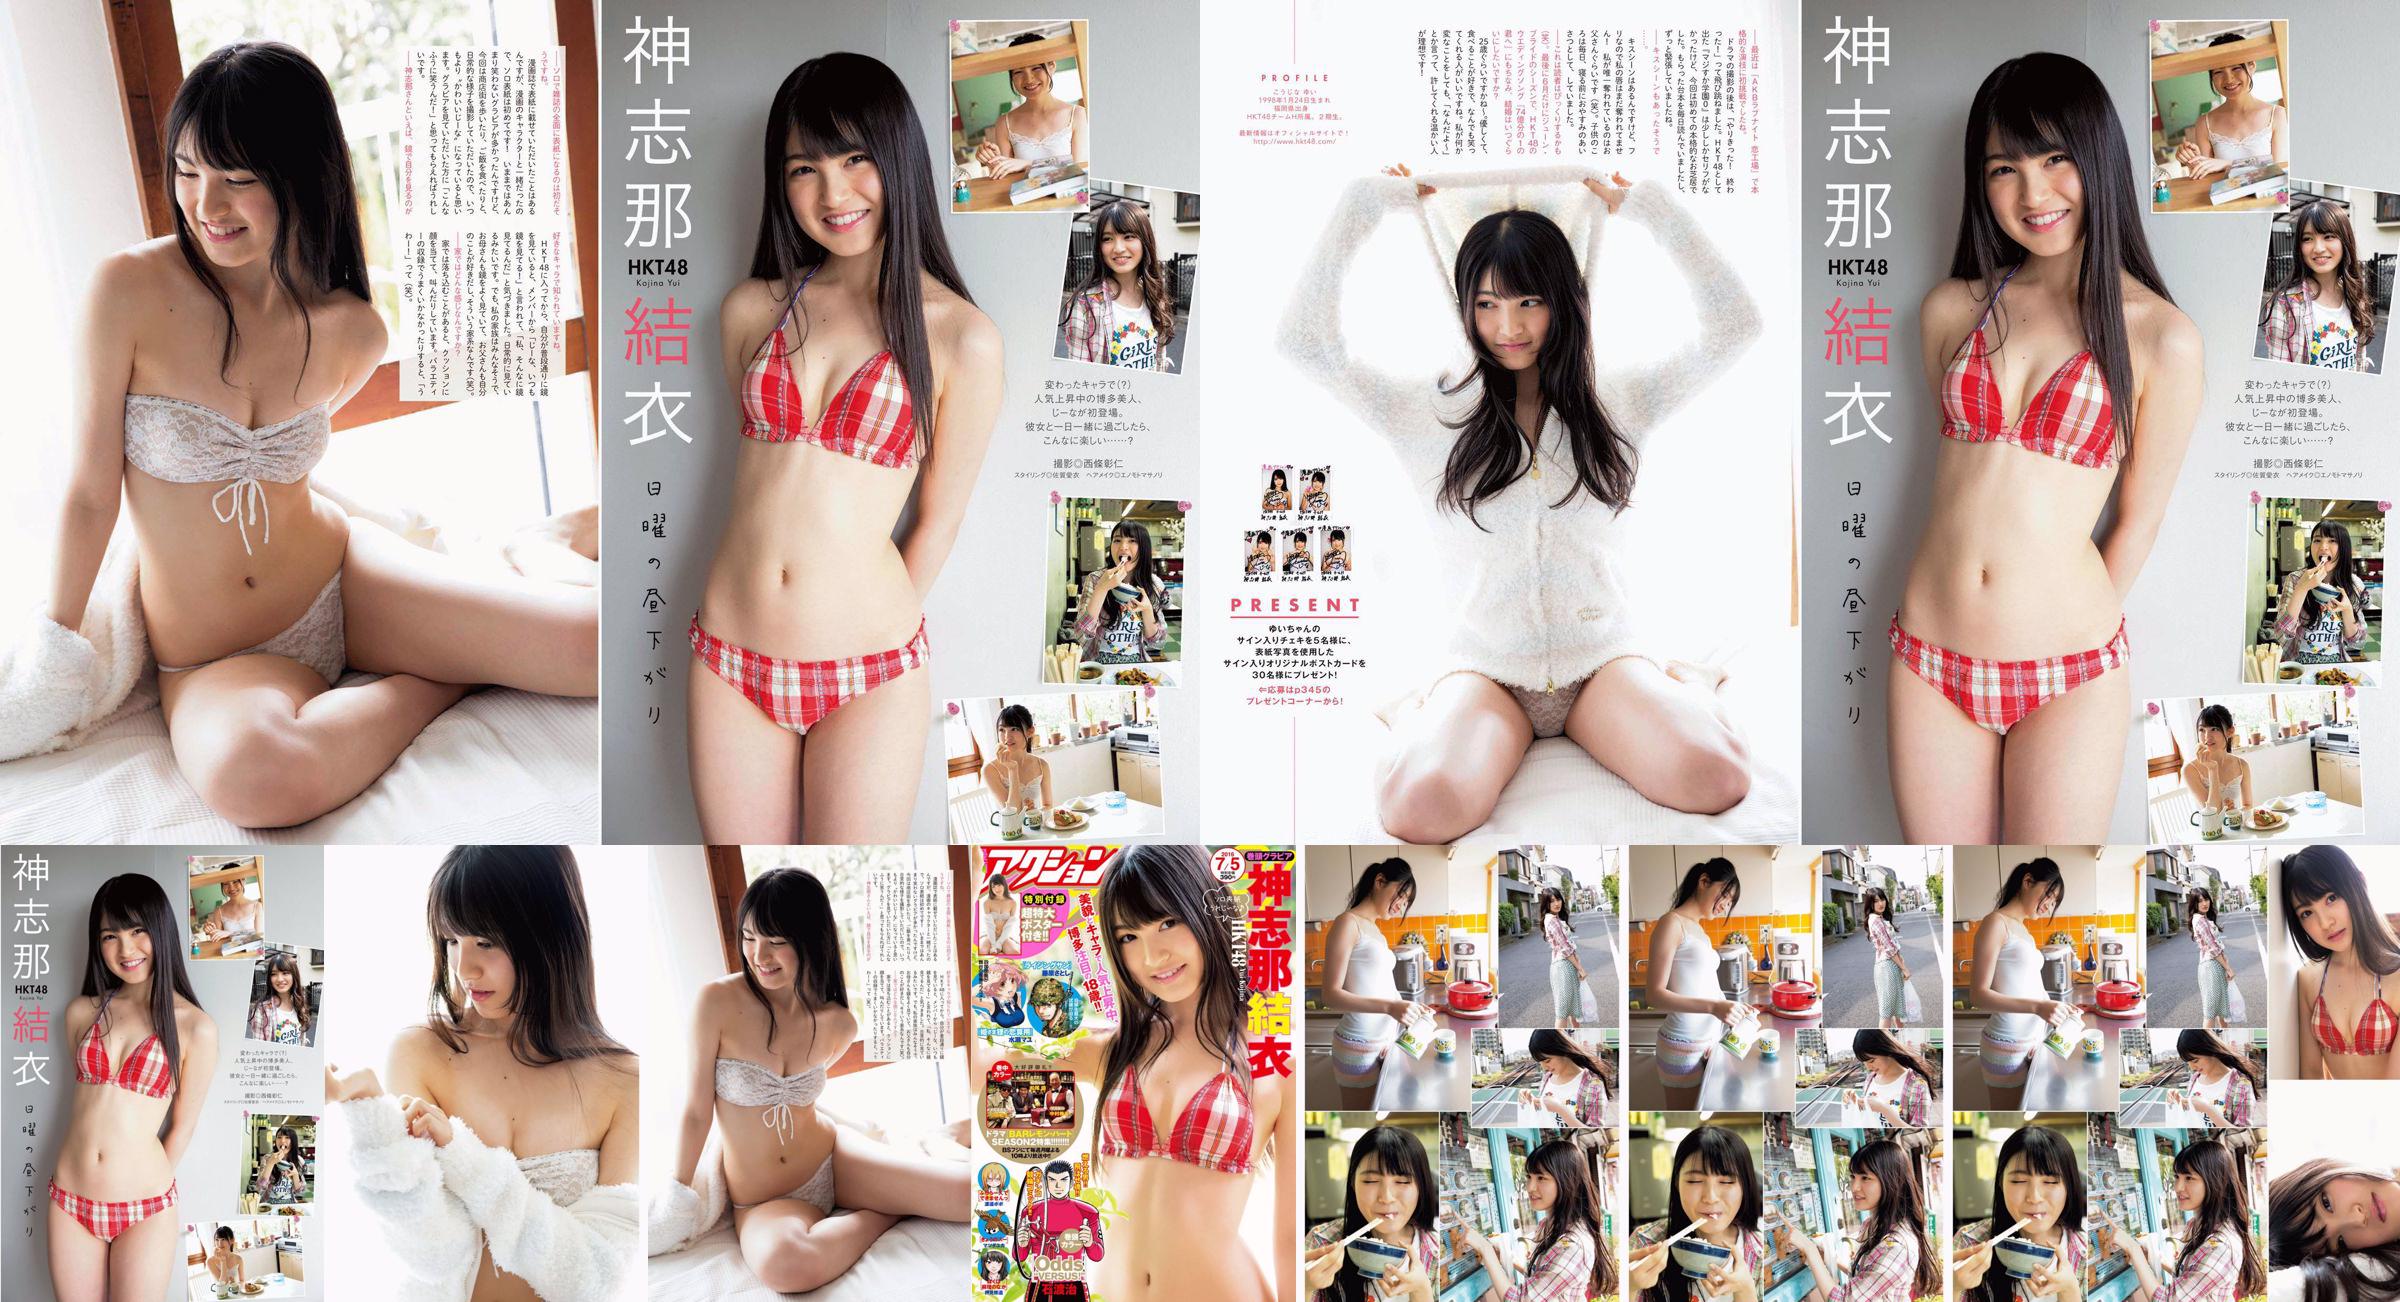 [Acción Manga] Shinshina Yui 2016 No.13 Photo Magazine No.78bc42 Página 3